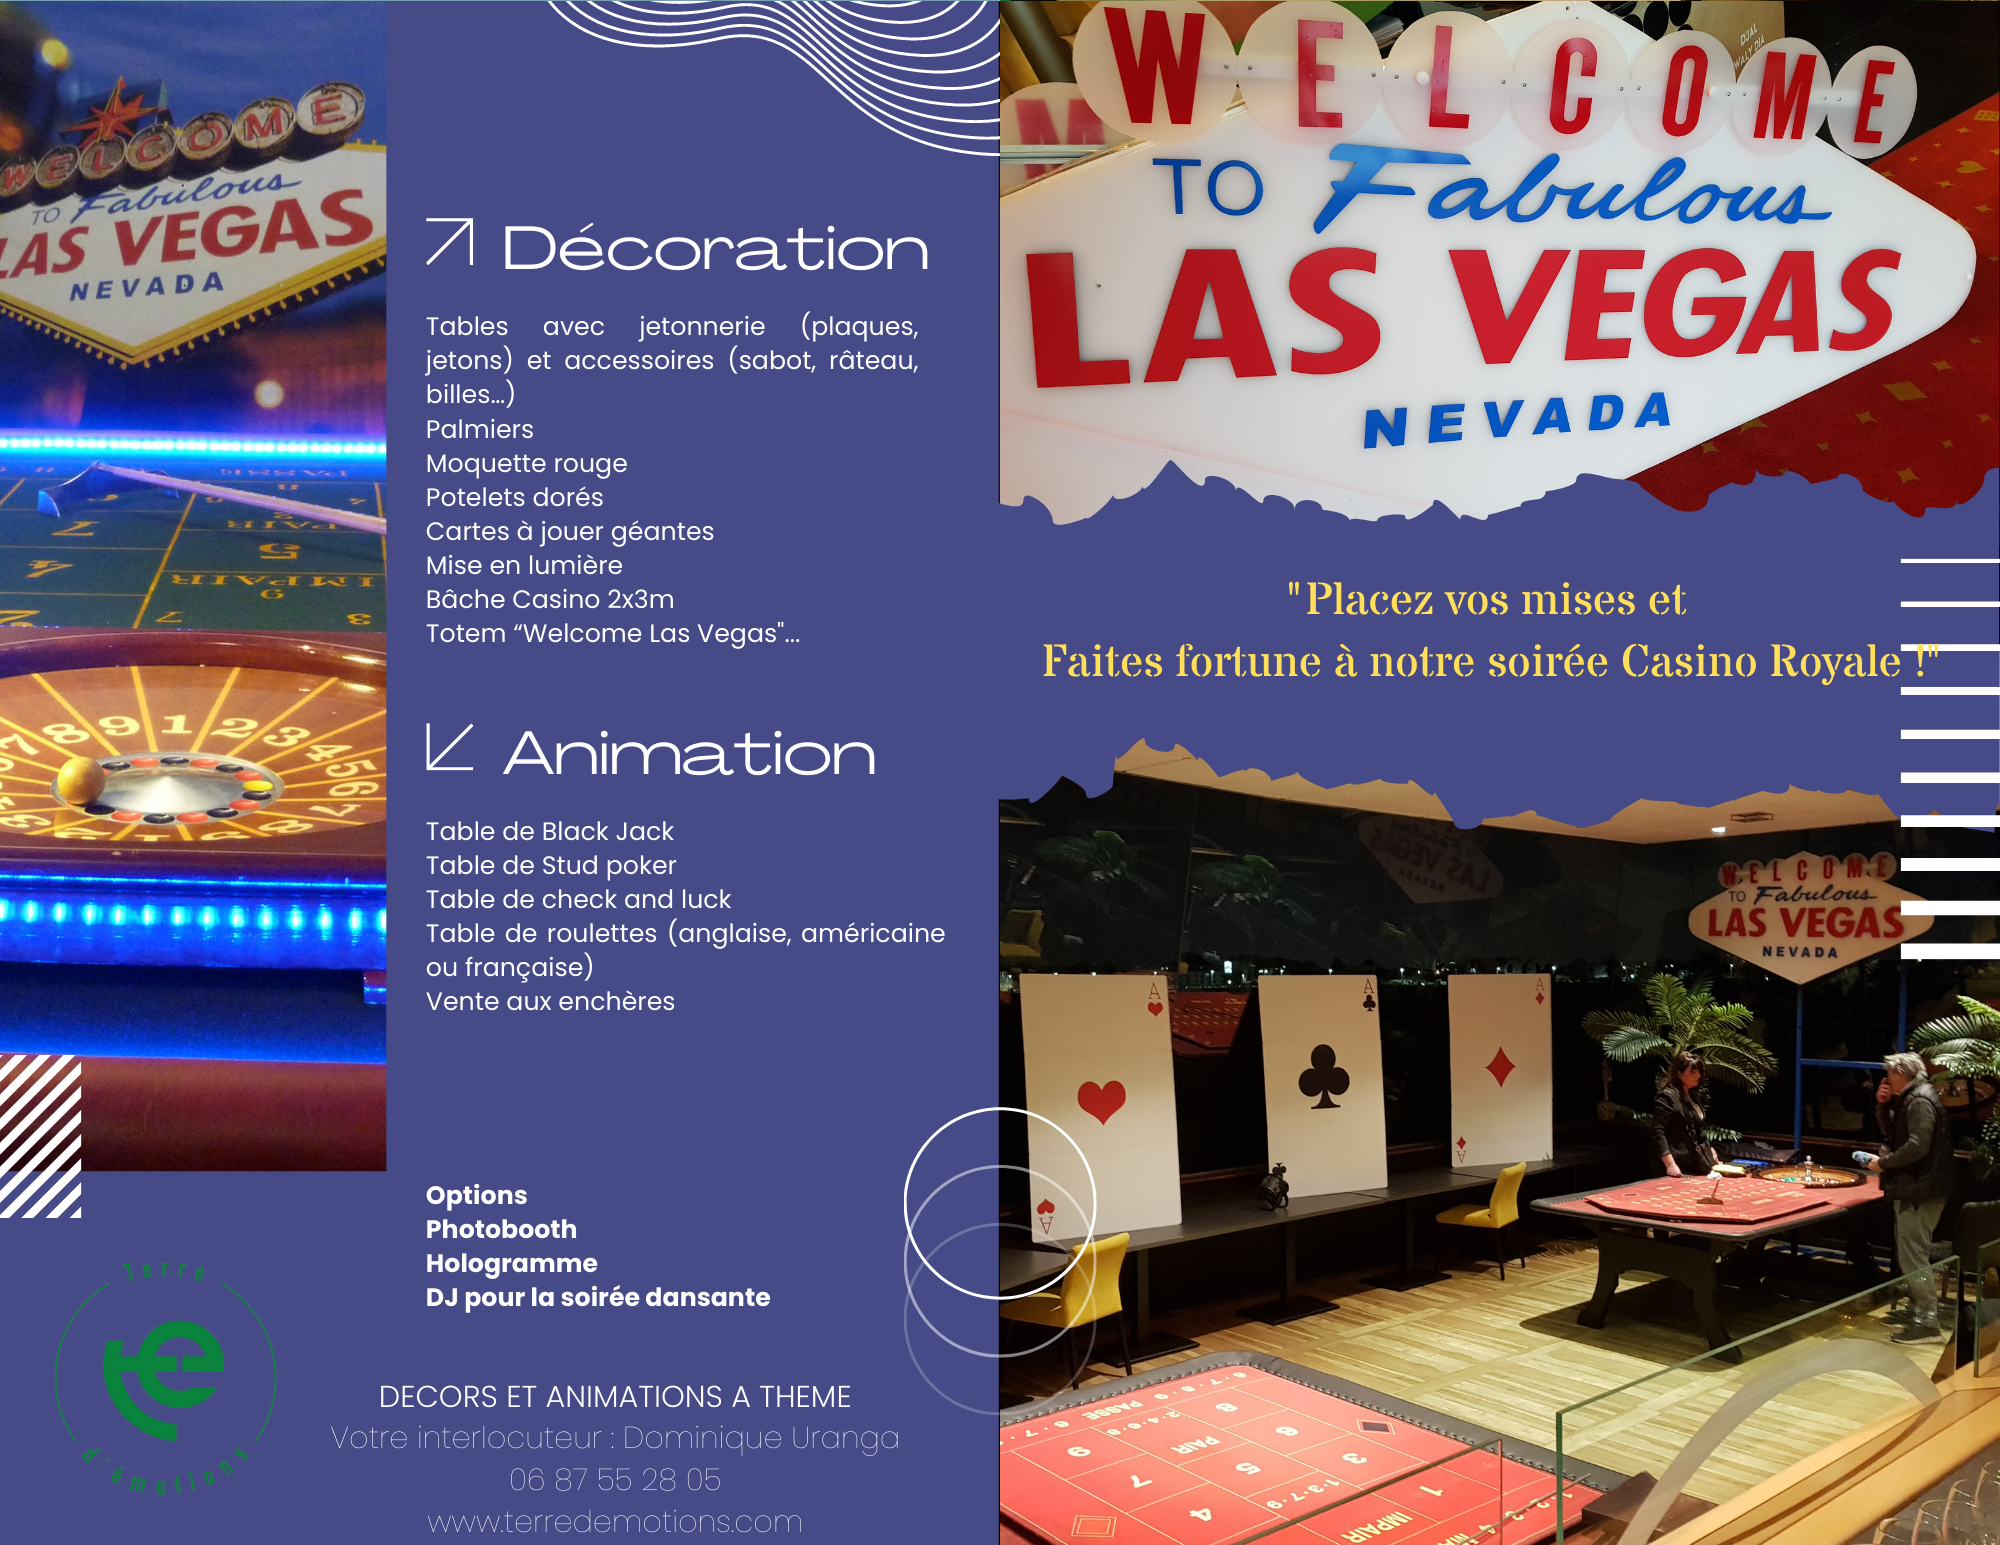 décors, scénographie et animations thème casino